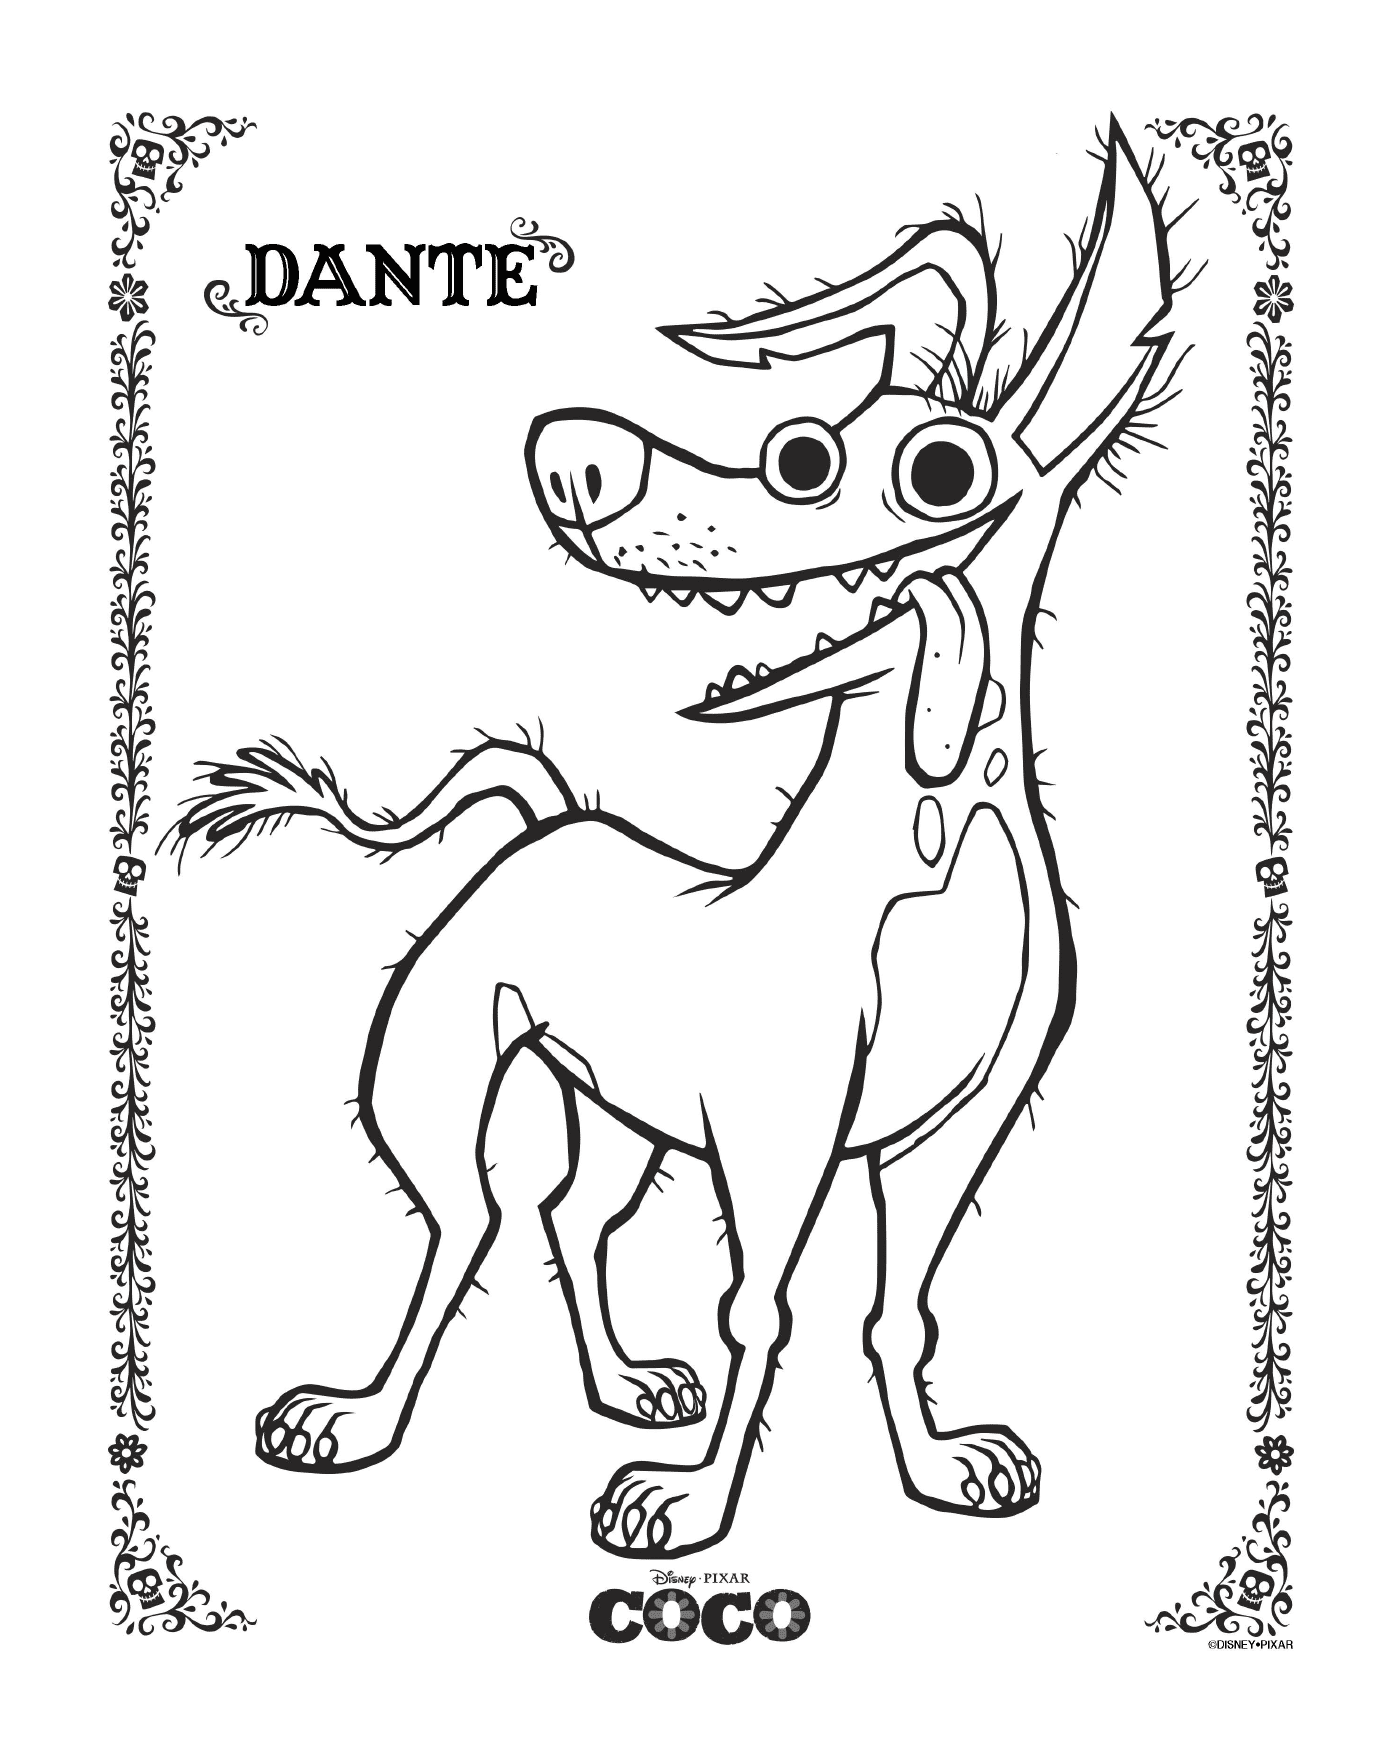   Dante 2 dans Coco, de Disney 